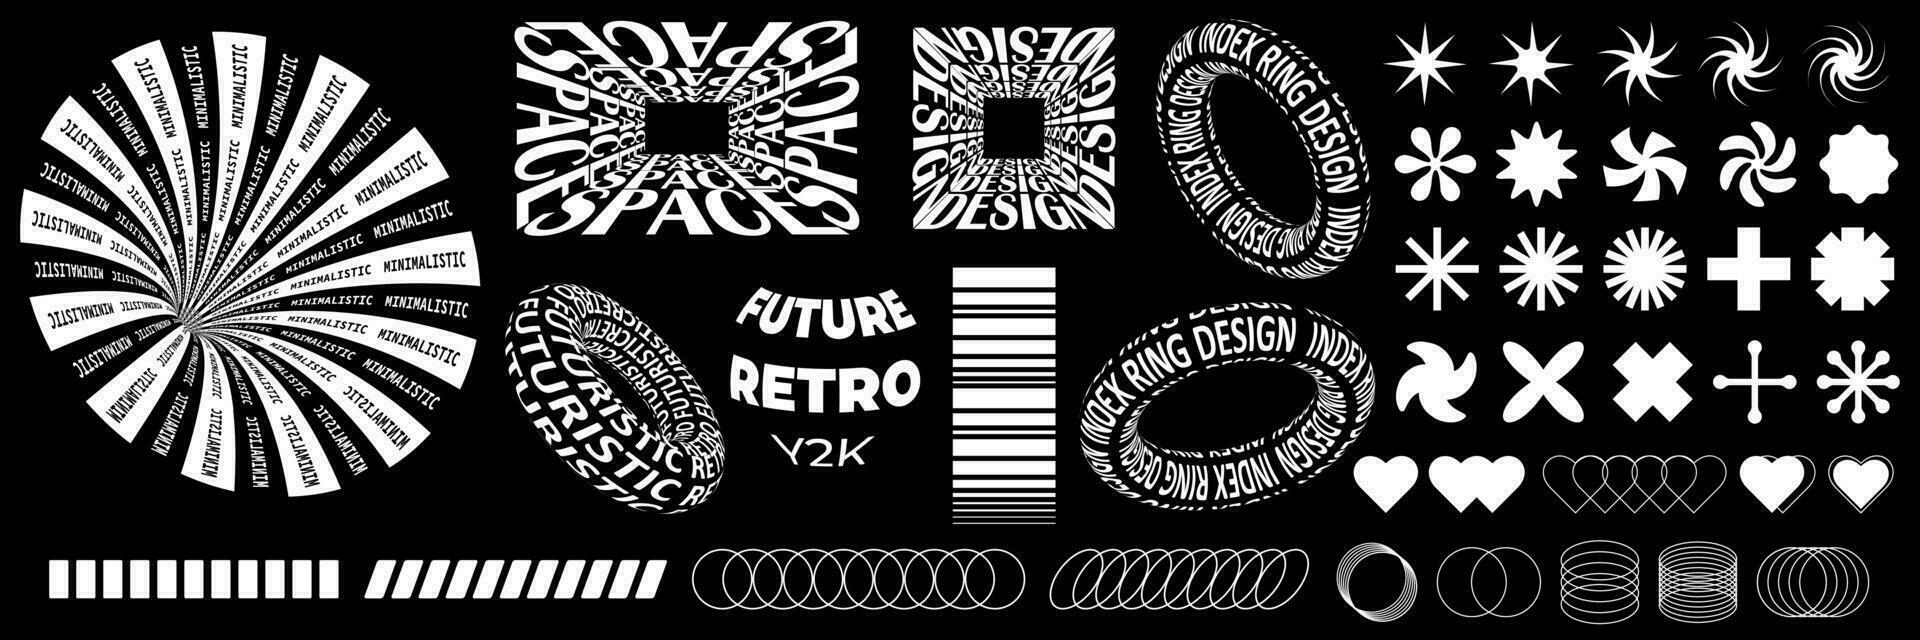 astratto forme nel di moda anni 2000 retrò stile. geometrico elementi, griglia, testo, sfere, per siti web, volantini, manifesti, sociale reti. vettore impostato di y2k elementi per grafico design.